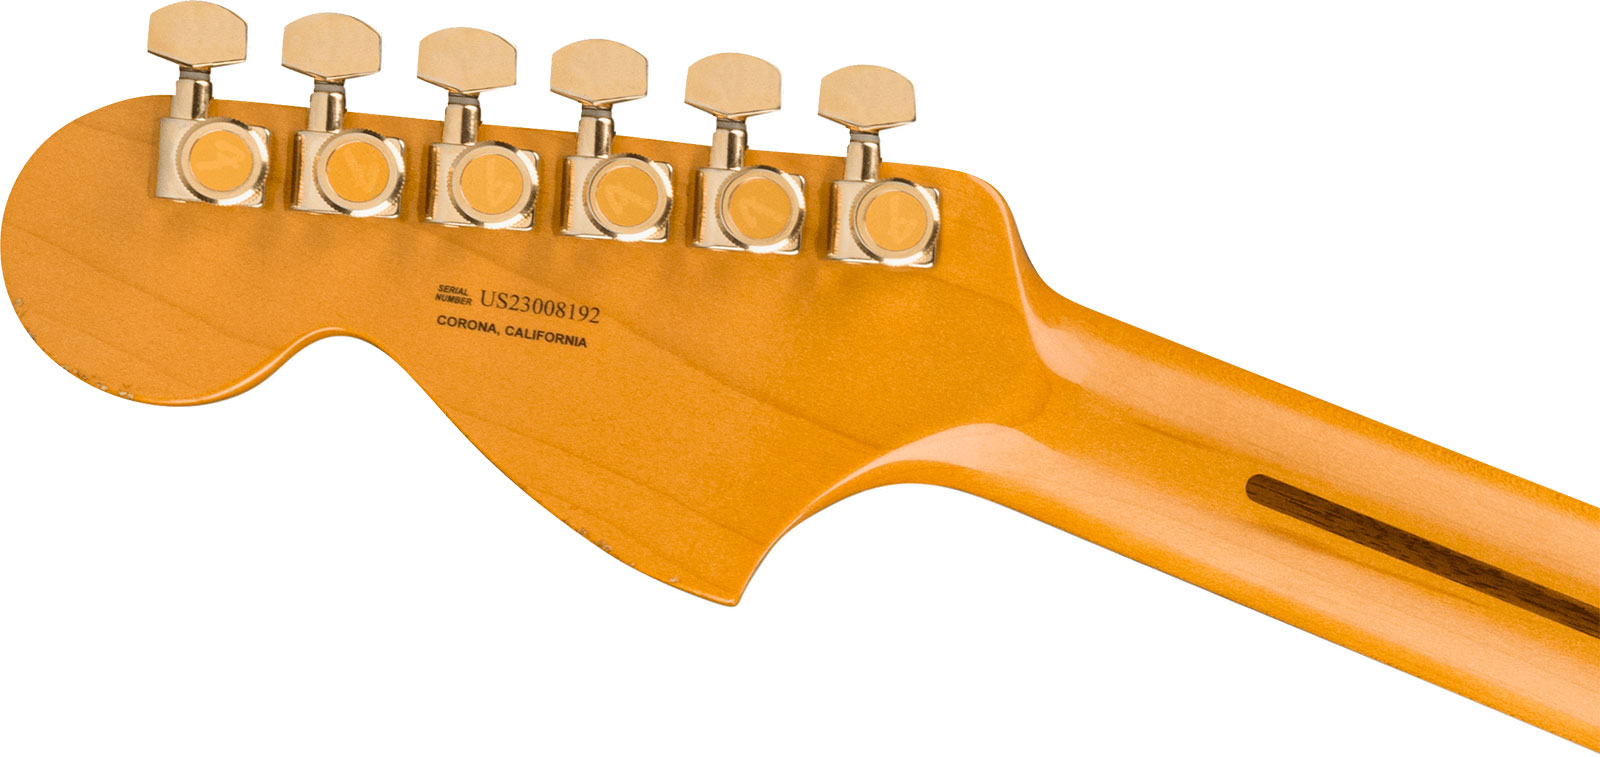 Fender Bruno Mars Strat Usa Signature 3s Trem Mn - Mars Mocha - Kenmerkende elektrische gitaar - Variation 3